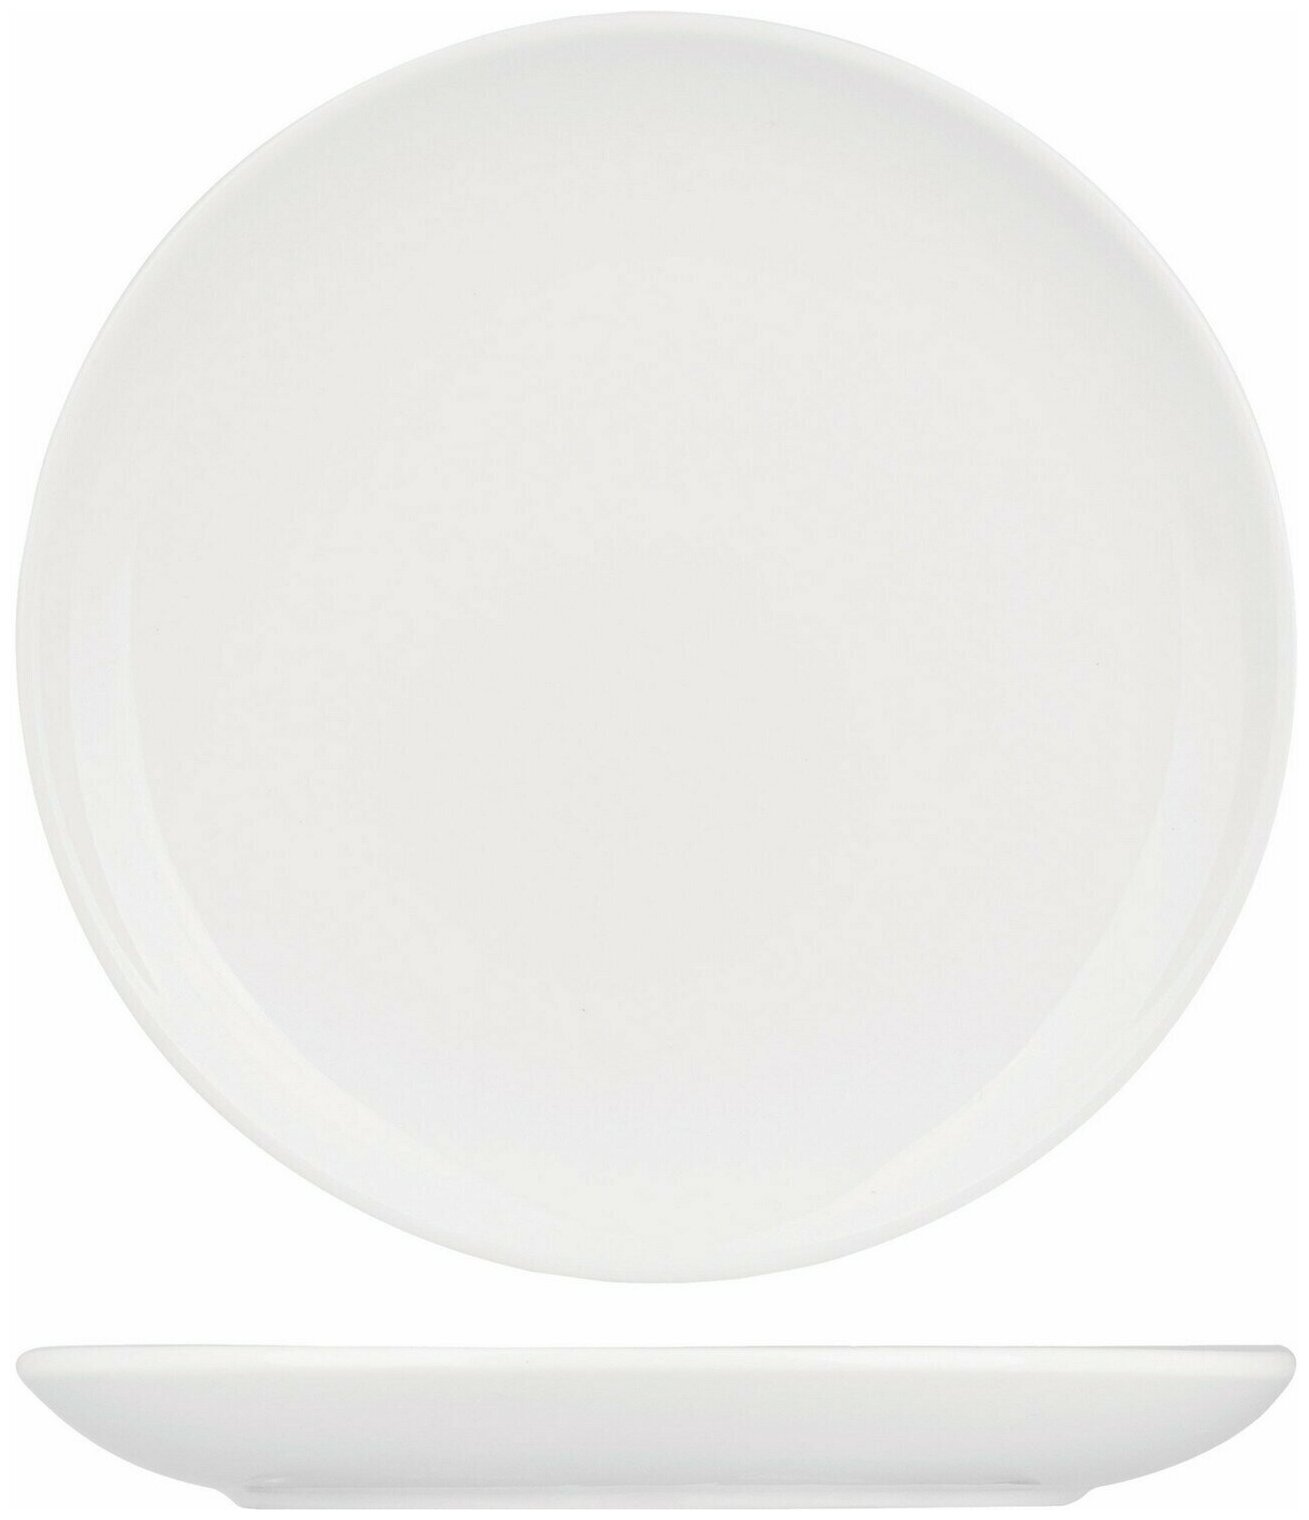 Тарелка Kunstwerk мелкая без борта 255х255х20мм, фарфор, белый.